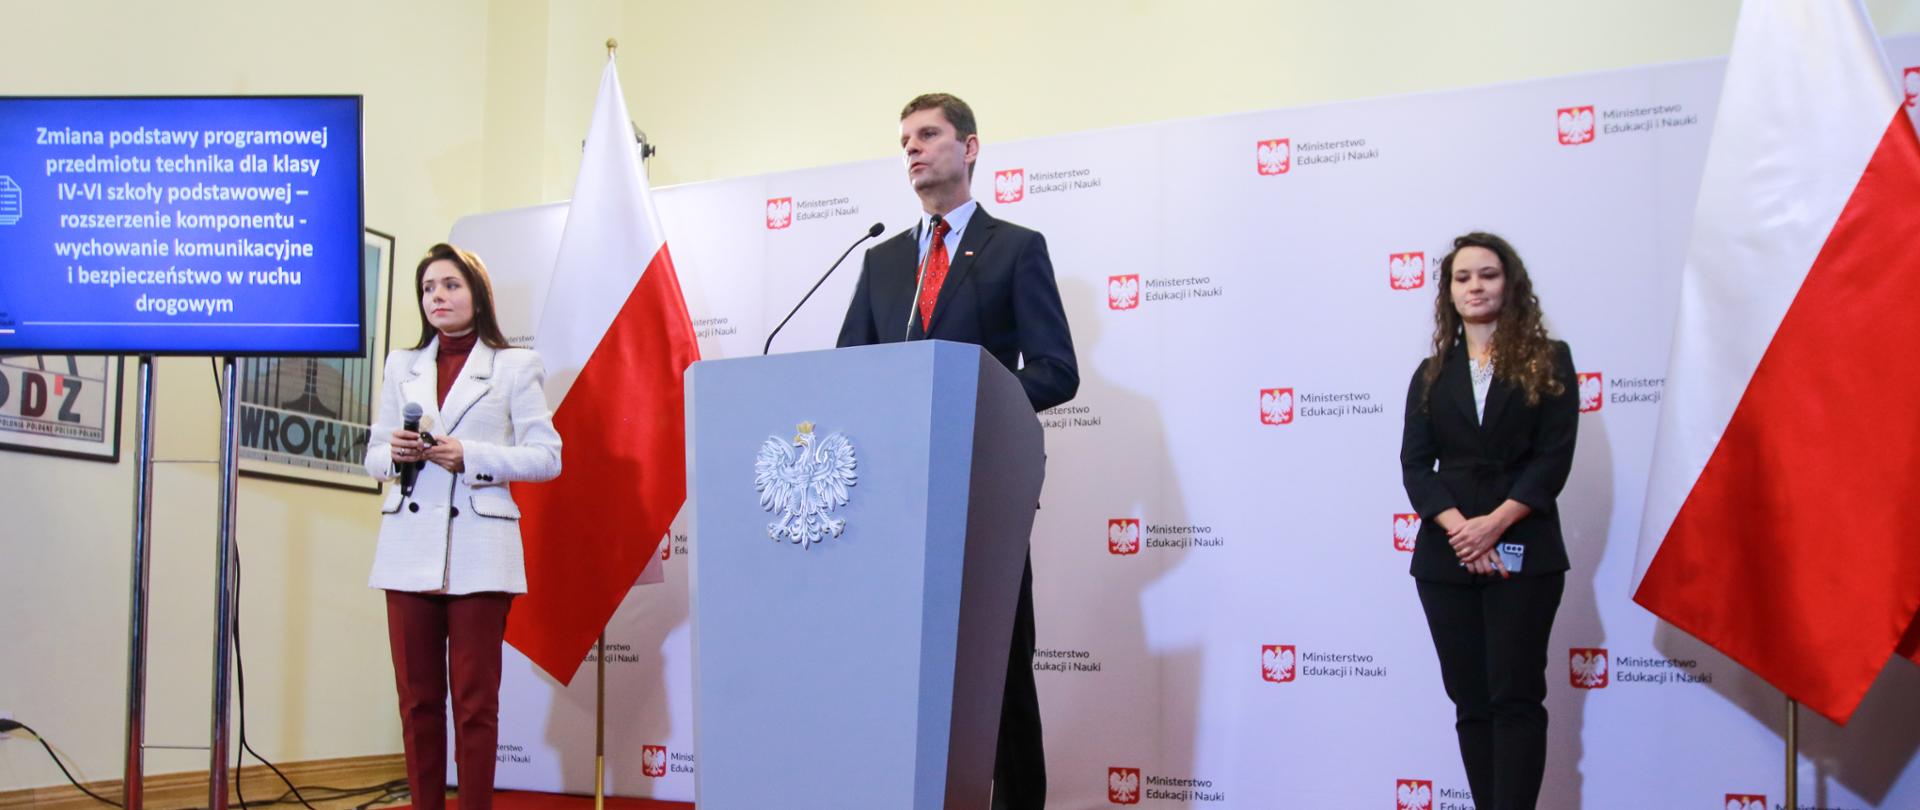 Wiceminister Dariusz Piontkowski stoi przy mównicy, po lewej stoi rzecznik prasowy, po porawej Justyna Orłowska. Czerwony dywan, w tle ścianka z logotypem Ministerstwa Edukacji i Nauki 